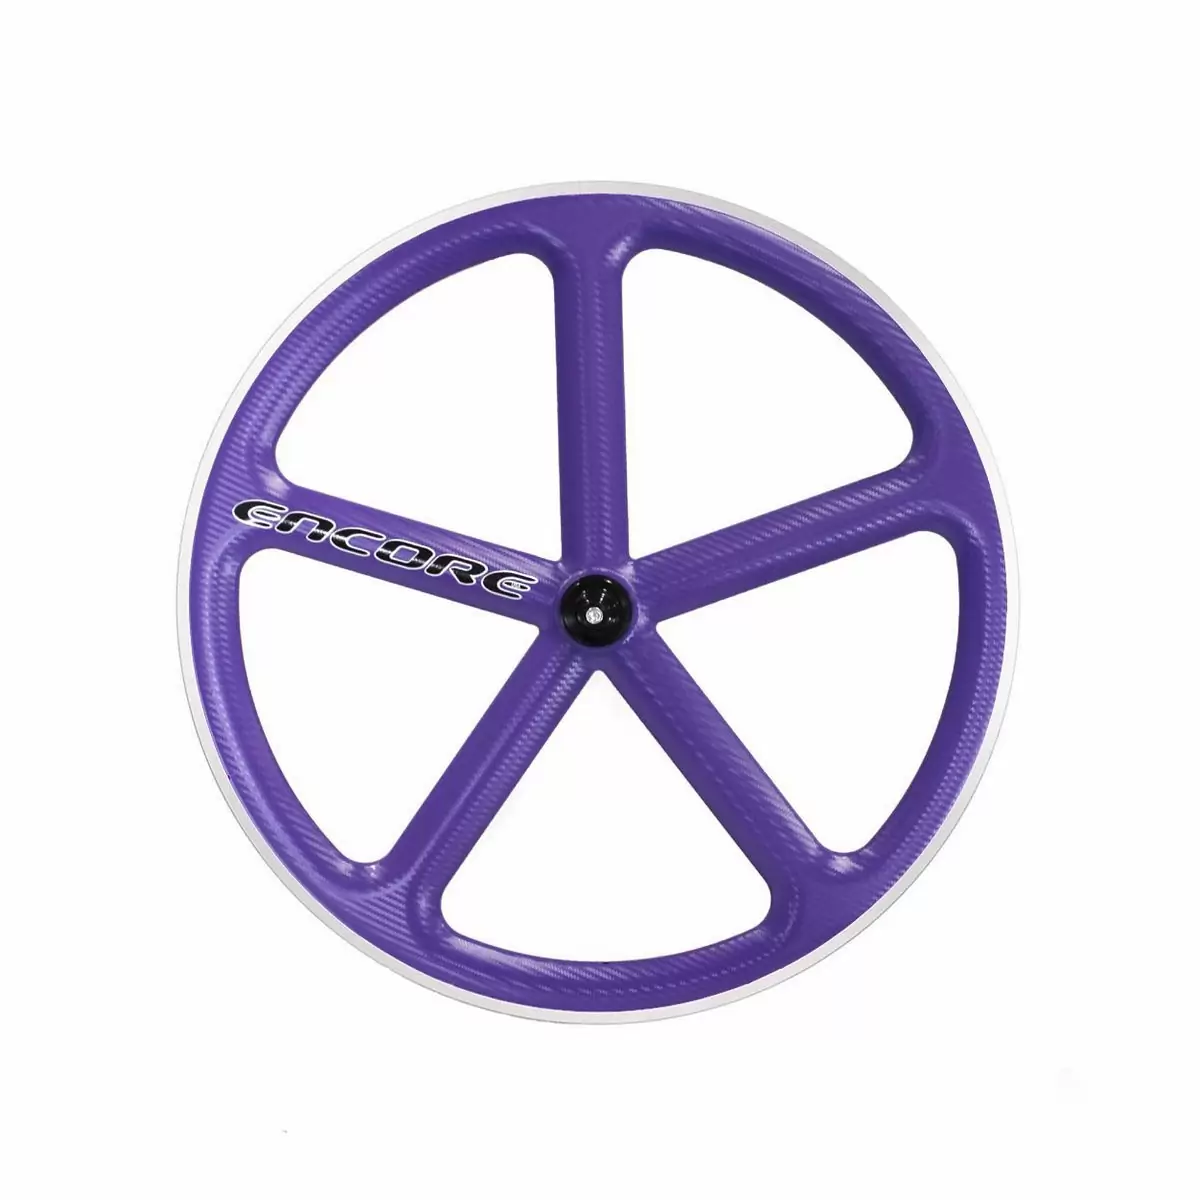 rueda delantera 700c track 5 radios carbon weave violeta msw - image